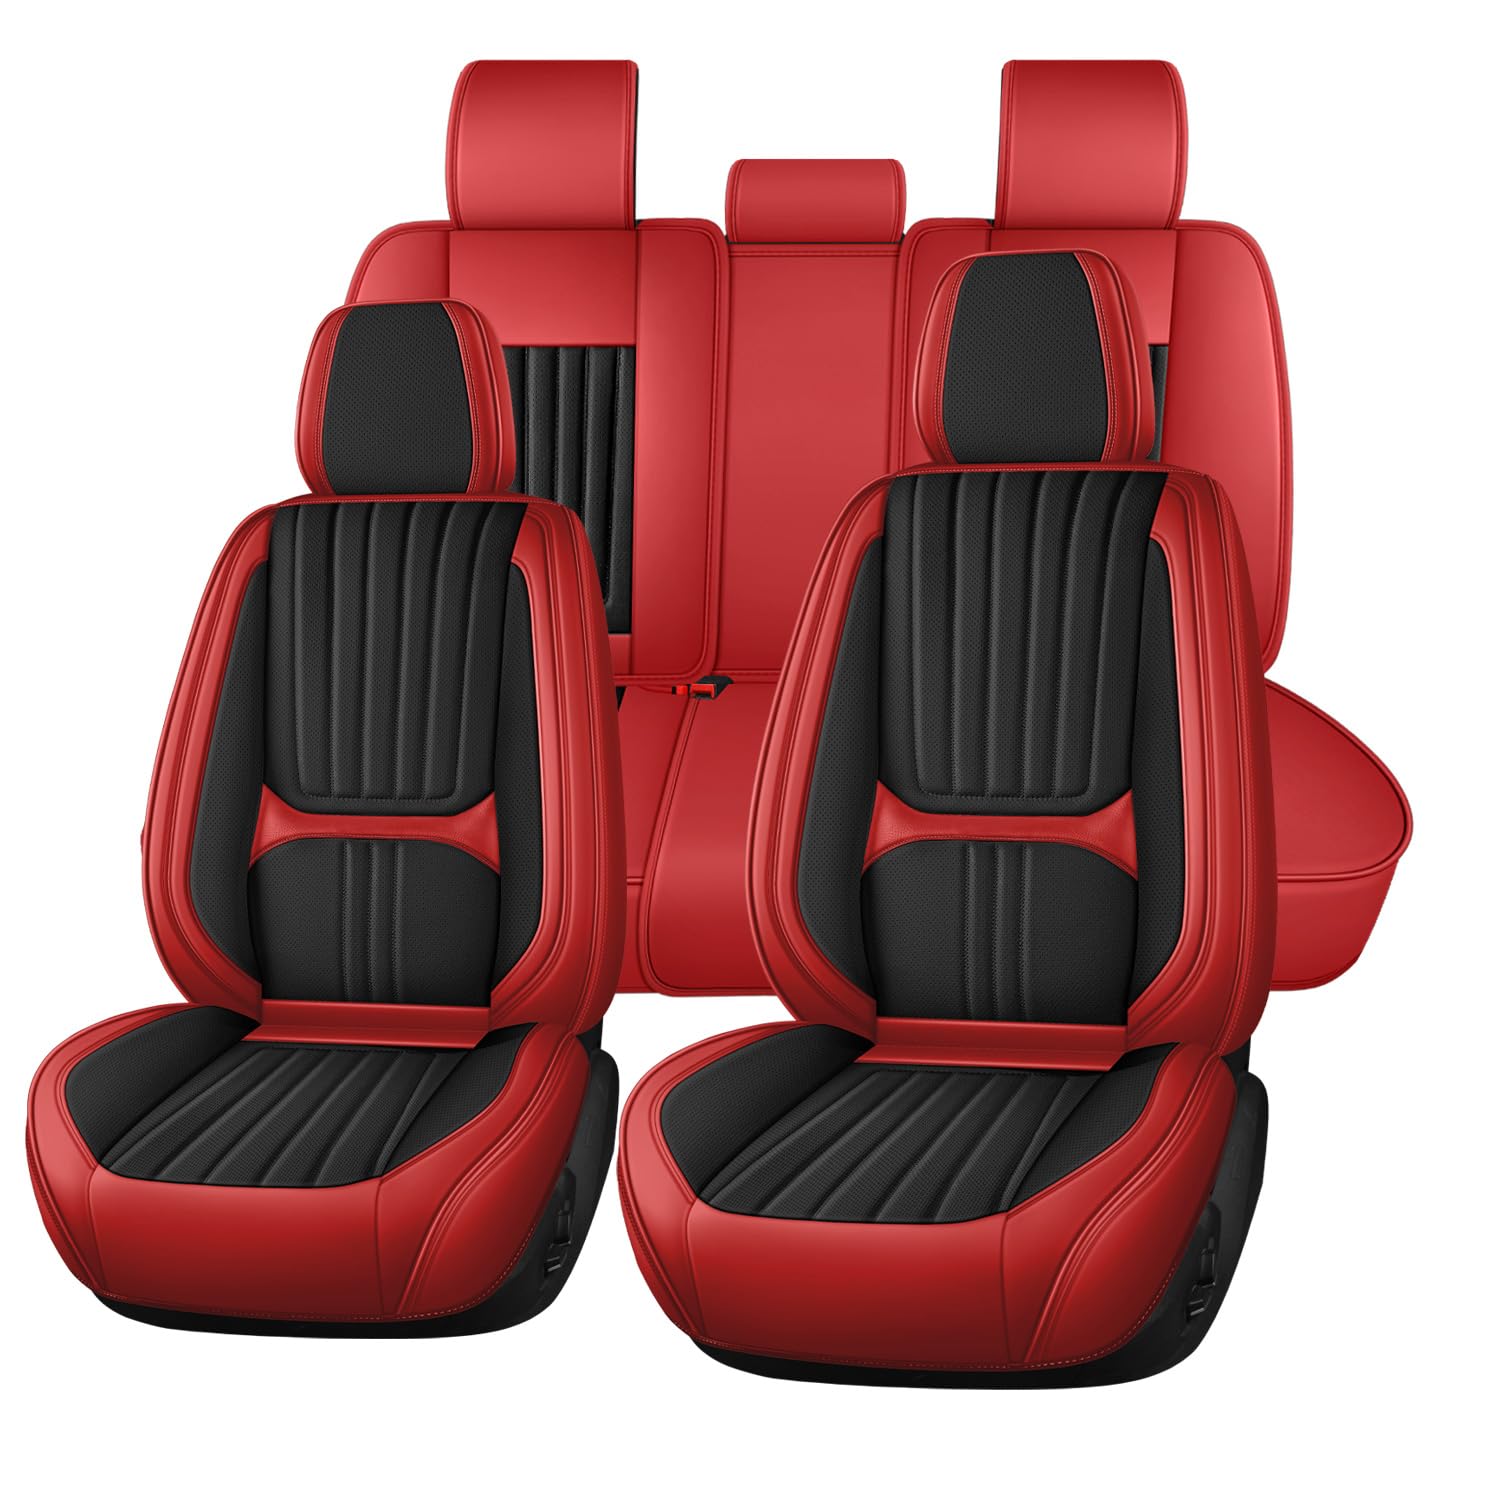 Buuoo Autositzbezüge Universal passend für Audi A4 A4 Avant A4 B8 A4 Avant B8 A4 Cabriolet Sitzkissen Schonbezug Set von Buuoo